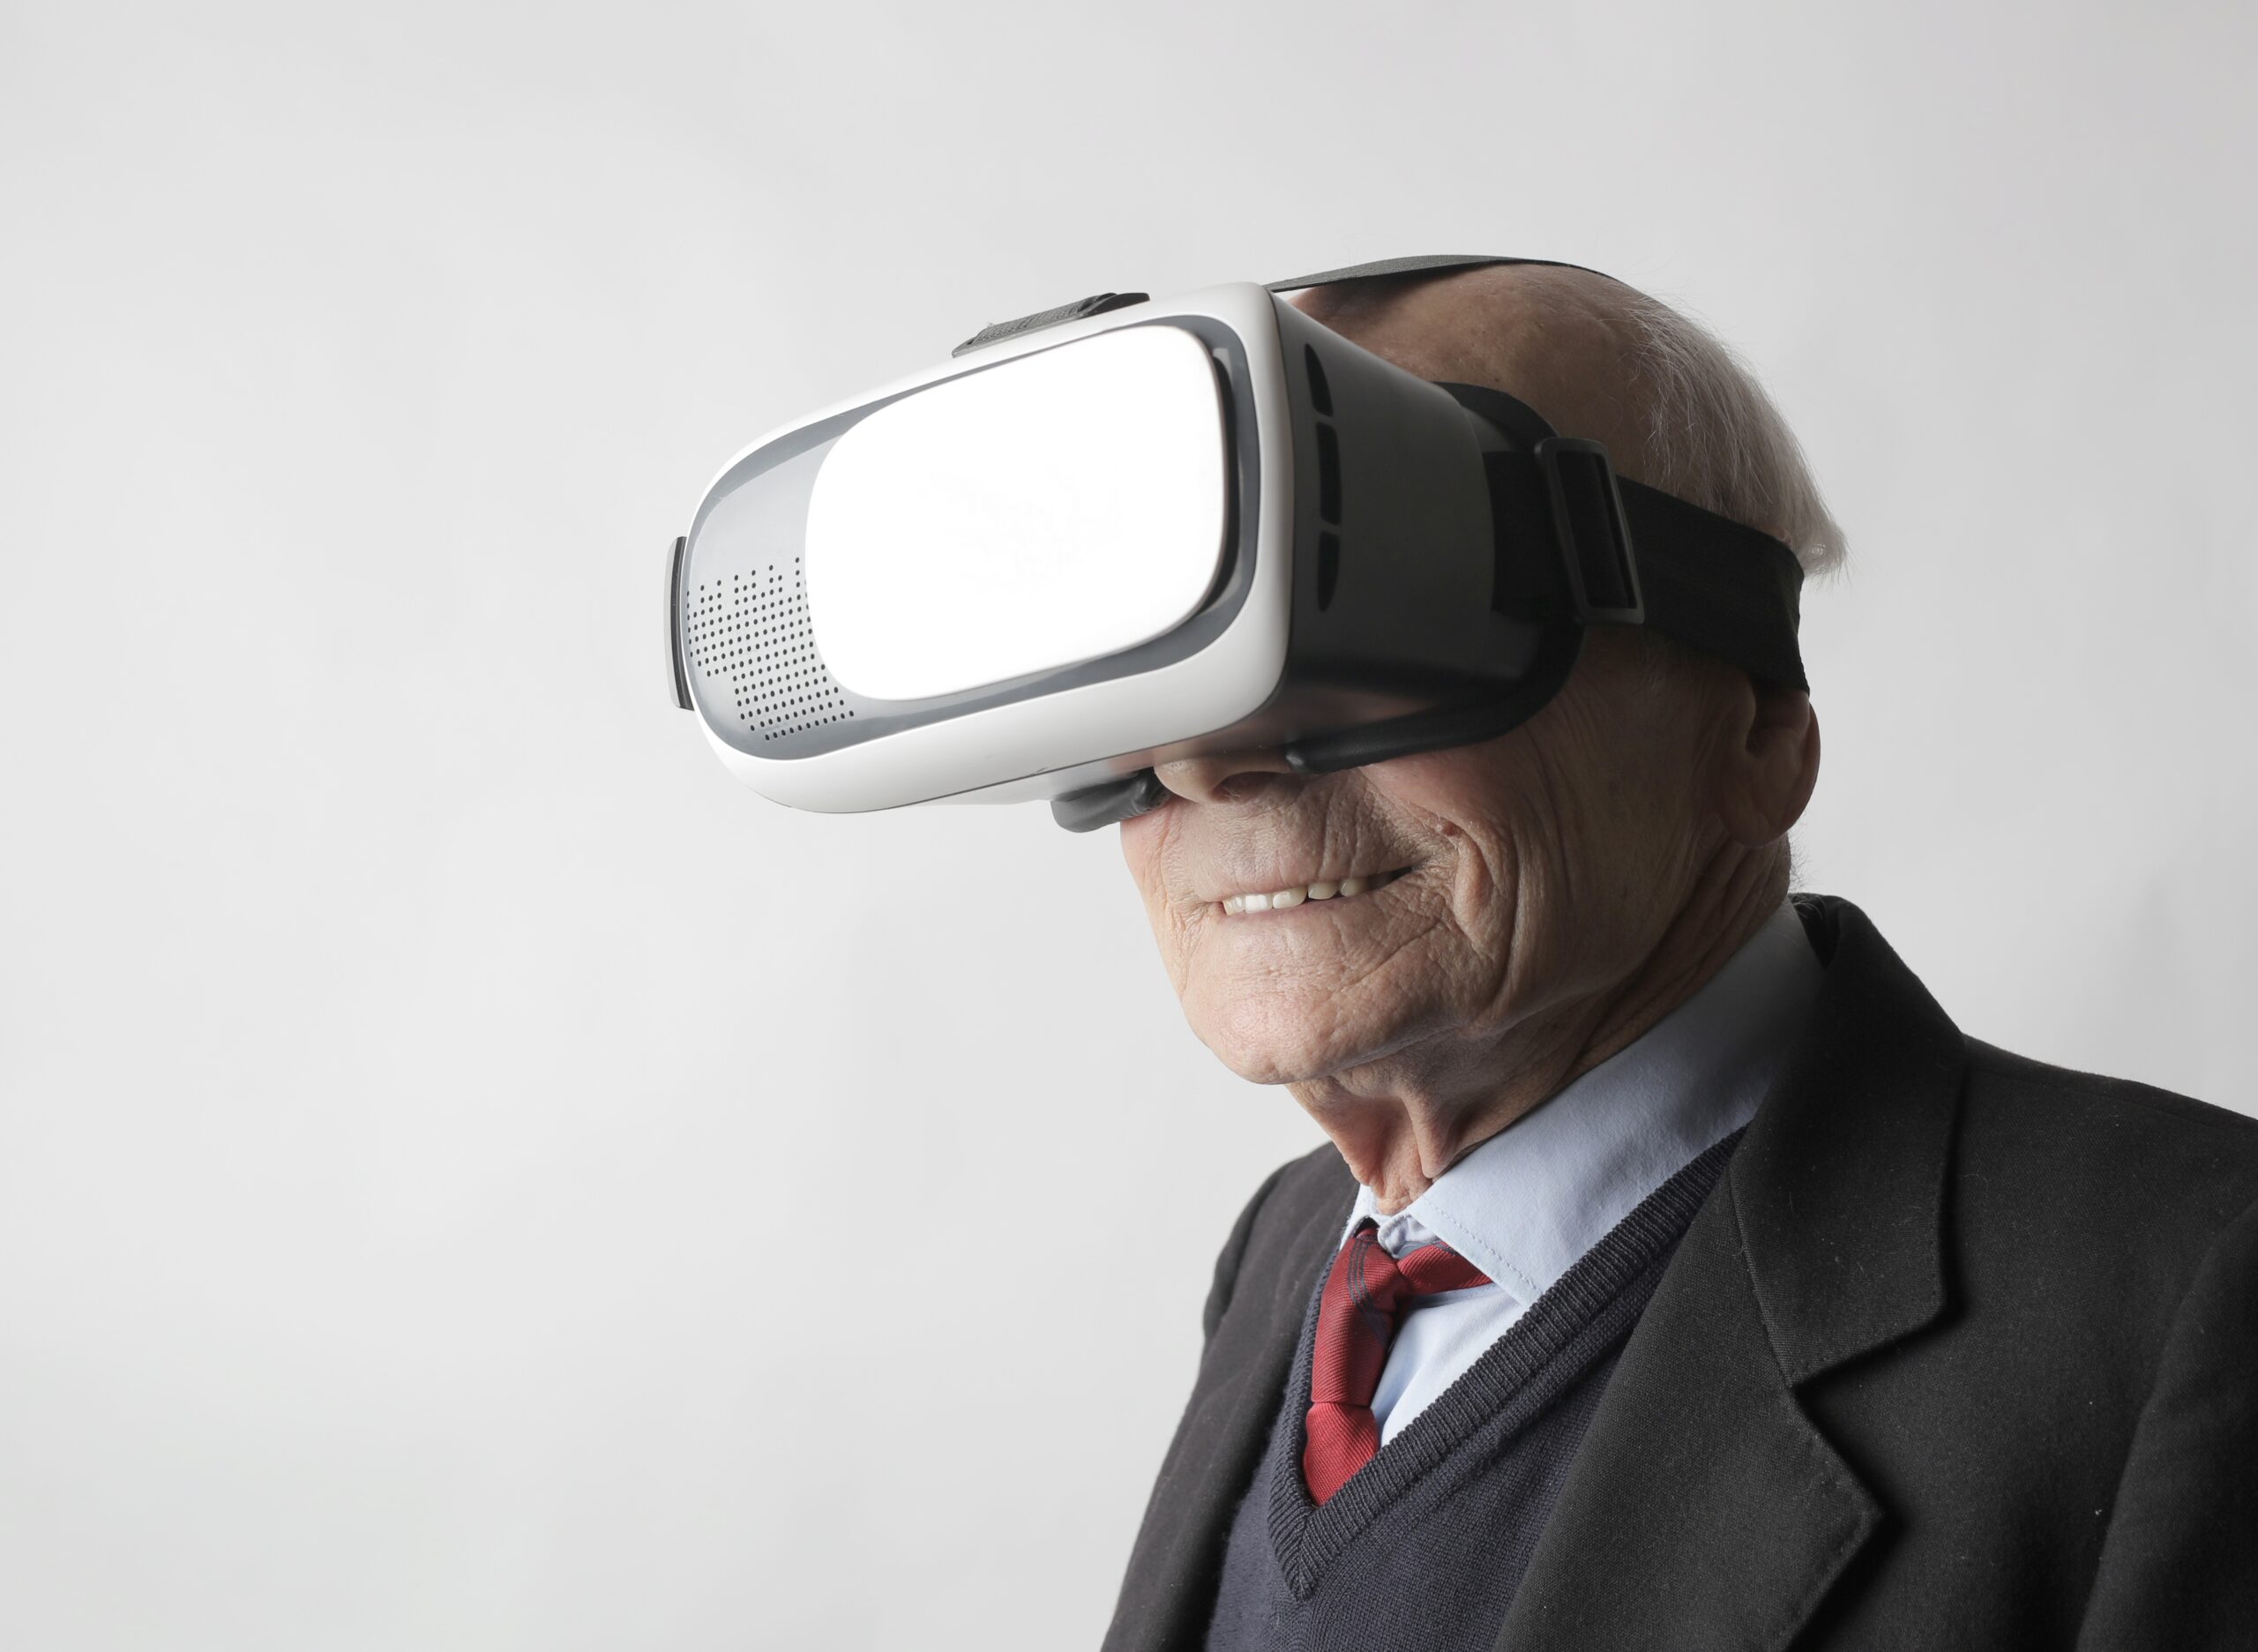 Yuval Noah “maailman pelottavin mies” Harari sanoo, että ihmisten on ehkä “opittava uudelleen näkemään ja kävelemään” virtuaalitodellisuuden tulevaisuudessa.